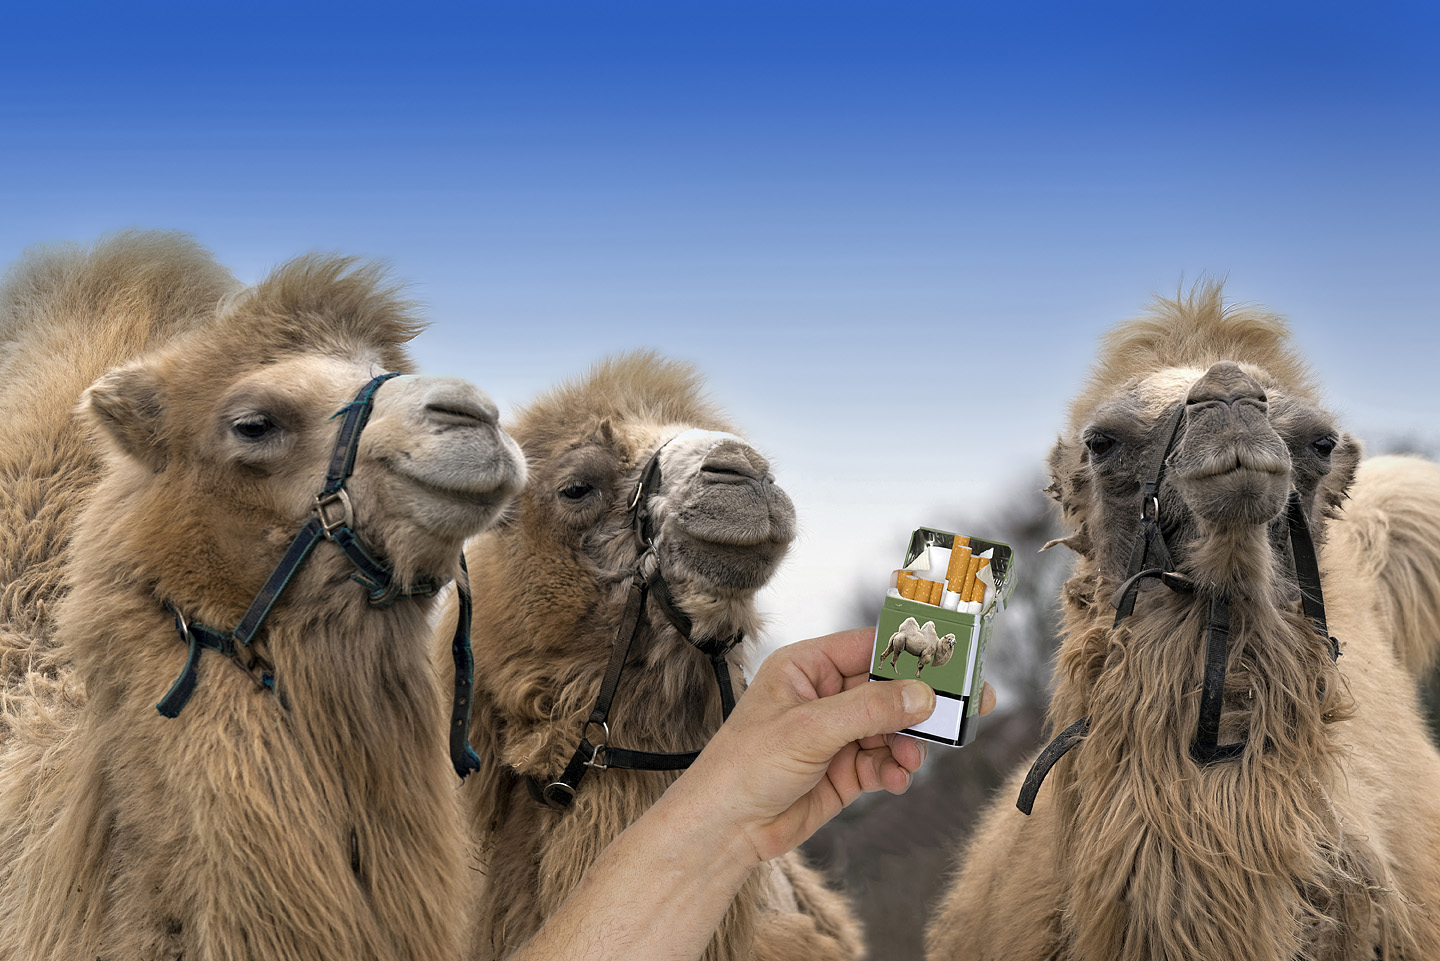 Zigarette für Camel - only